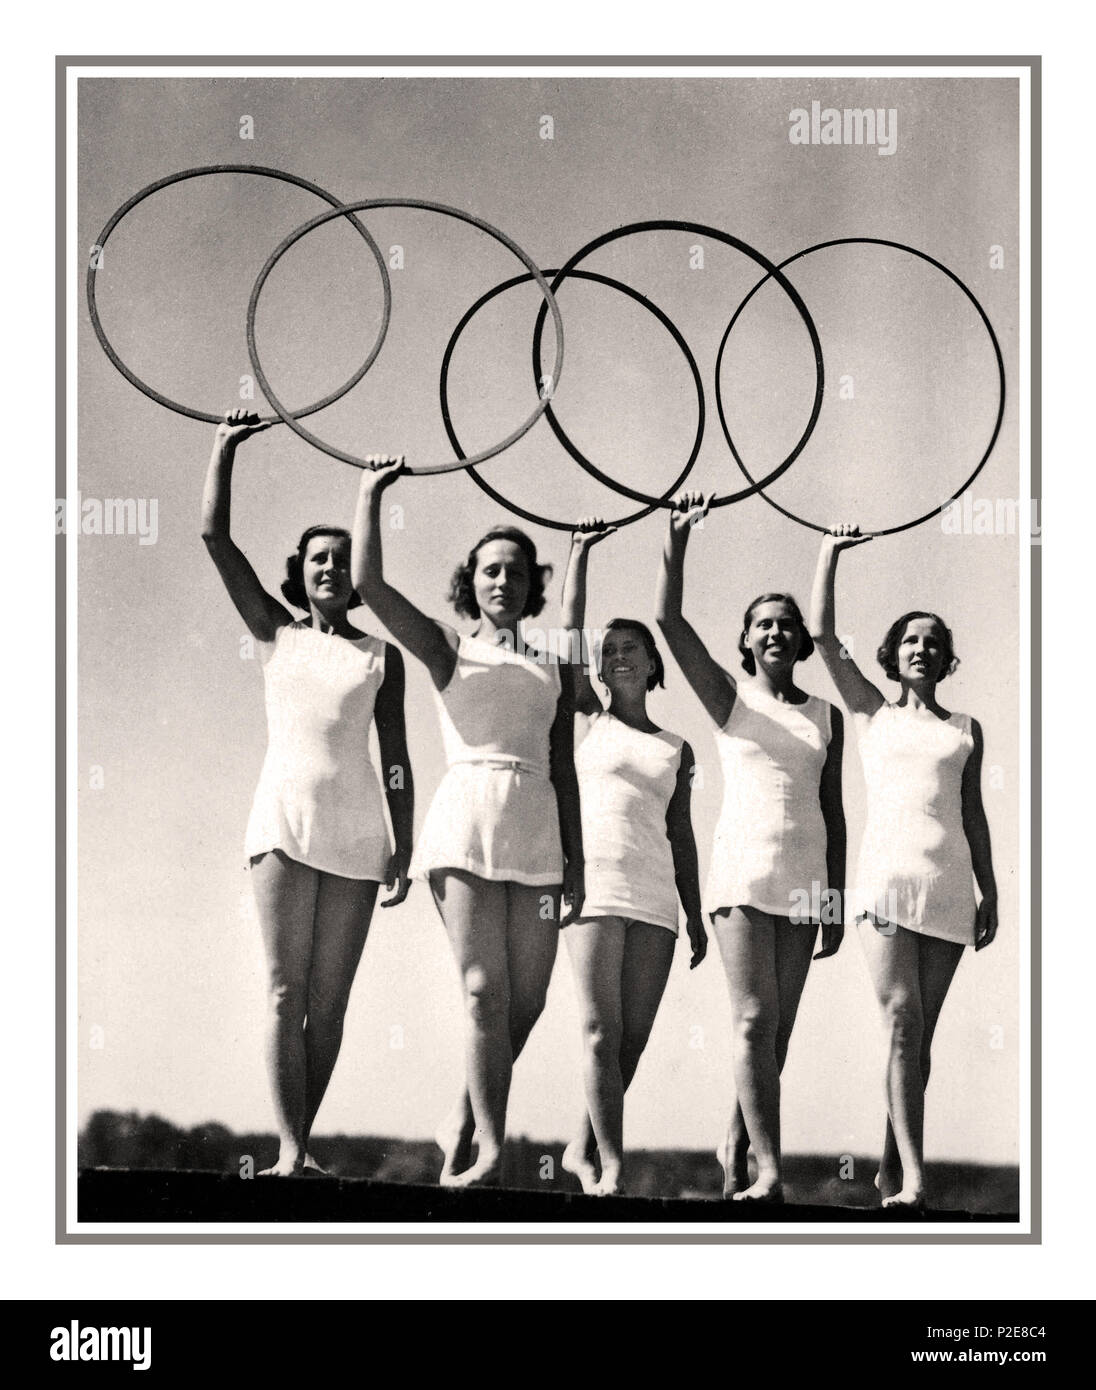 Jeux Olympiques 1936, Berlin, Allemagne les anneaux Olympiques ont été organisés par cinq jeunes athlètes Jeux Olympiques d'ÉTÉ 1936, BERLIN, carte photo montrant des danseurs blonds aryens avec les anneaux Olympiques, STADE OLYMPIQUE DE BERLIN AOÛT 13th 1936 Allemagne Banque D'Images